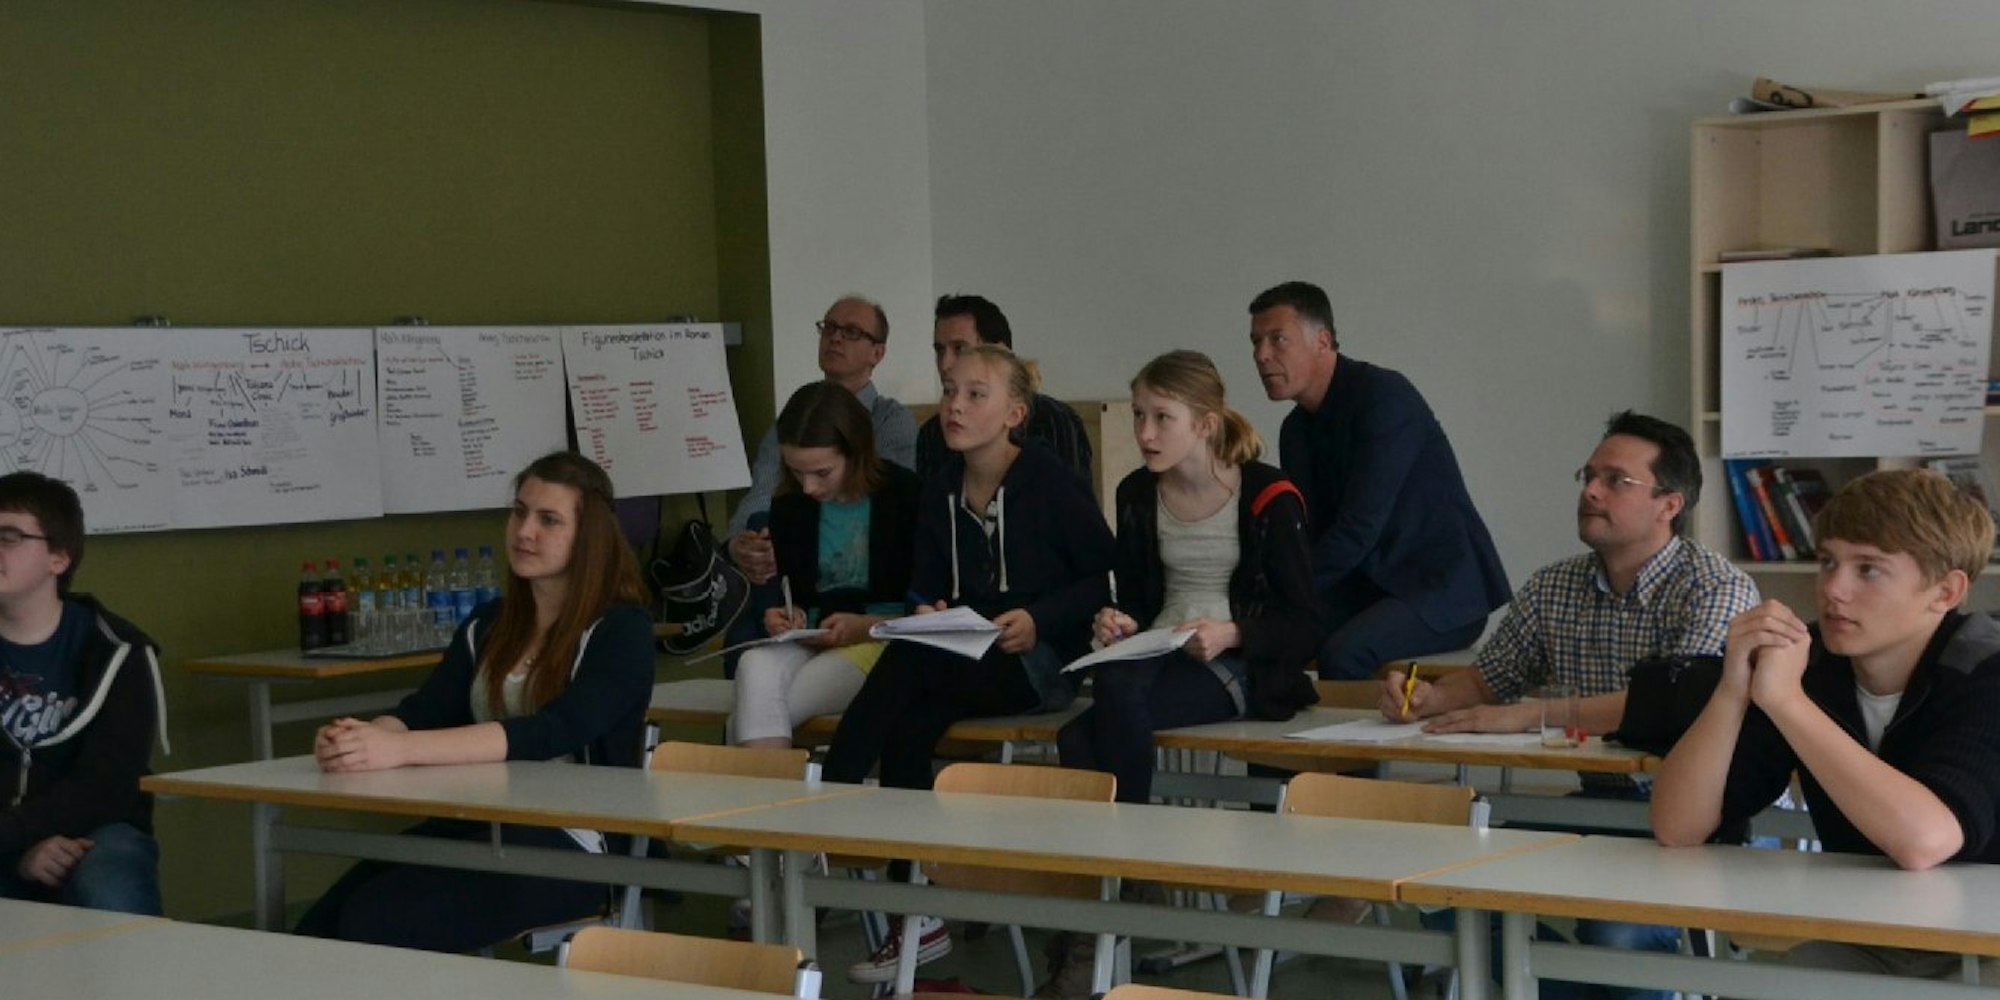 Am Anno-Gymnasium in Siegburg startet das Projekt "Schule als Staat".